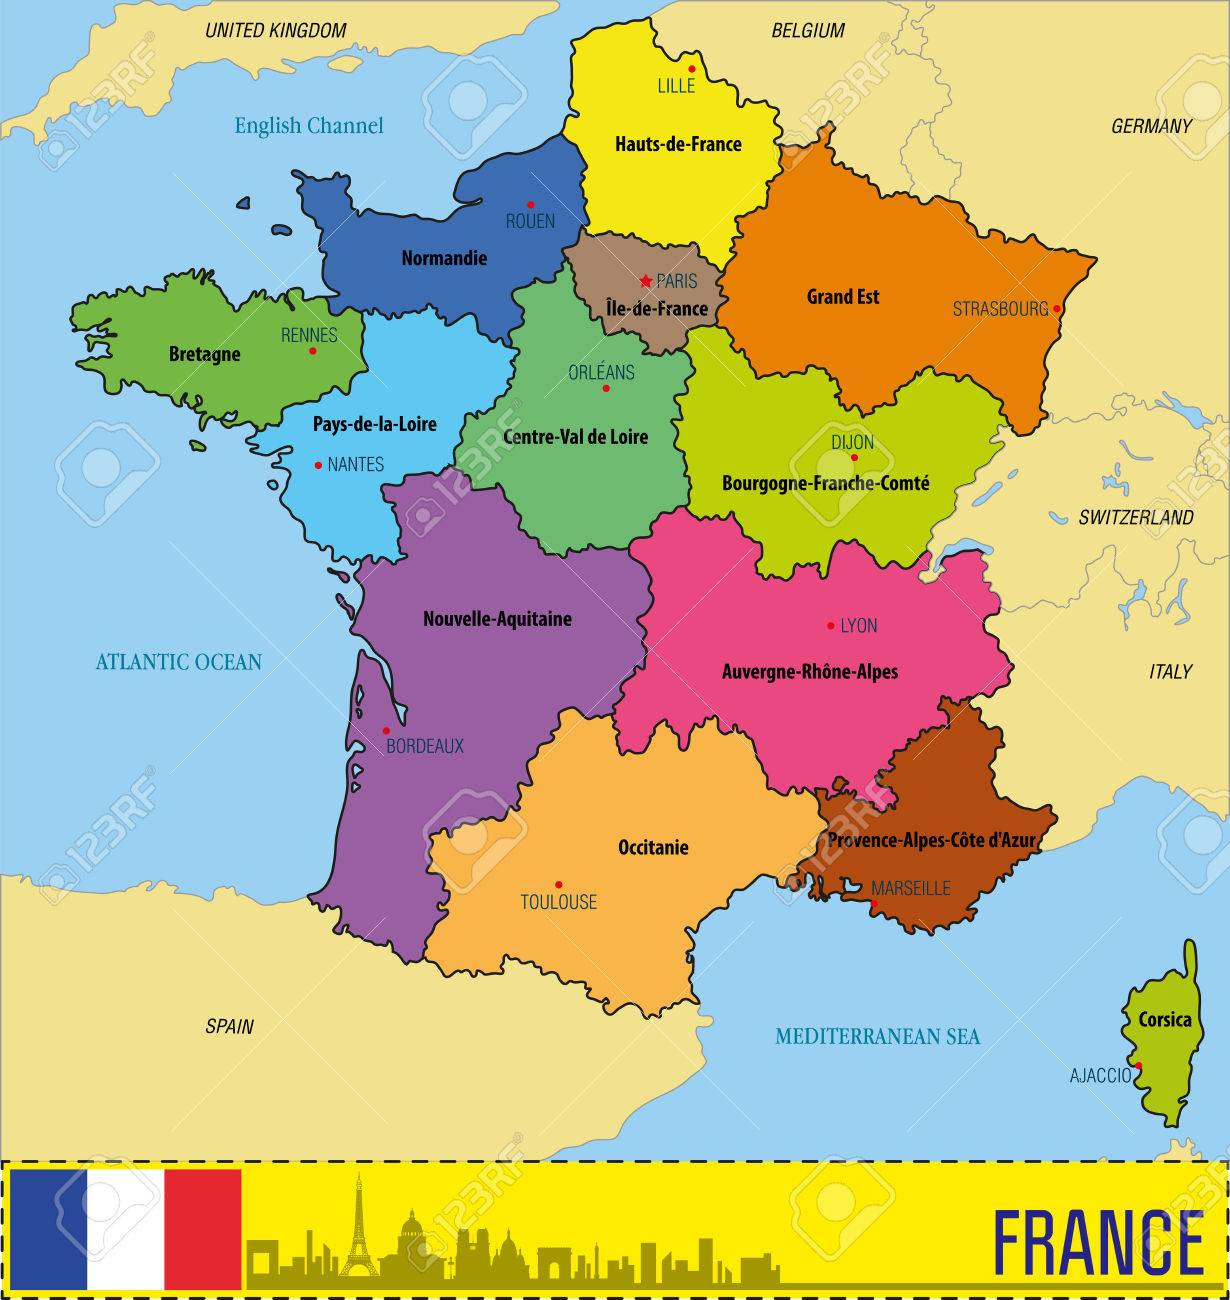 Carte Du Sud De La France Détaillée - Primanyc destiné Carte Du Sud De La France Détaillée